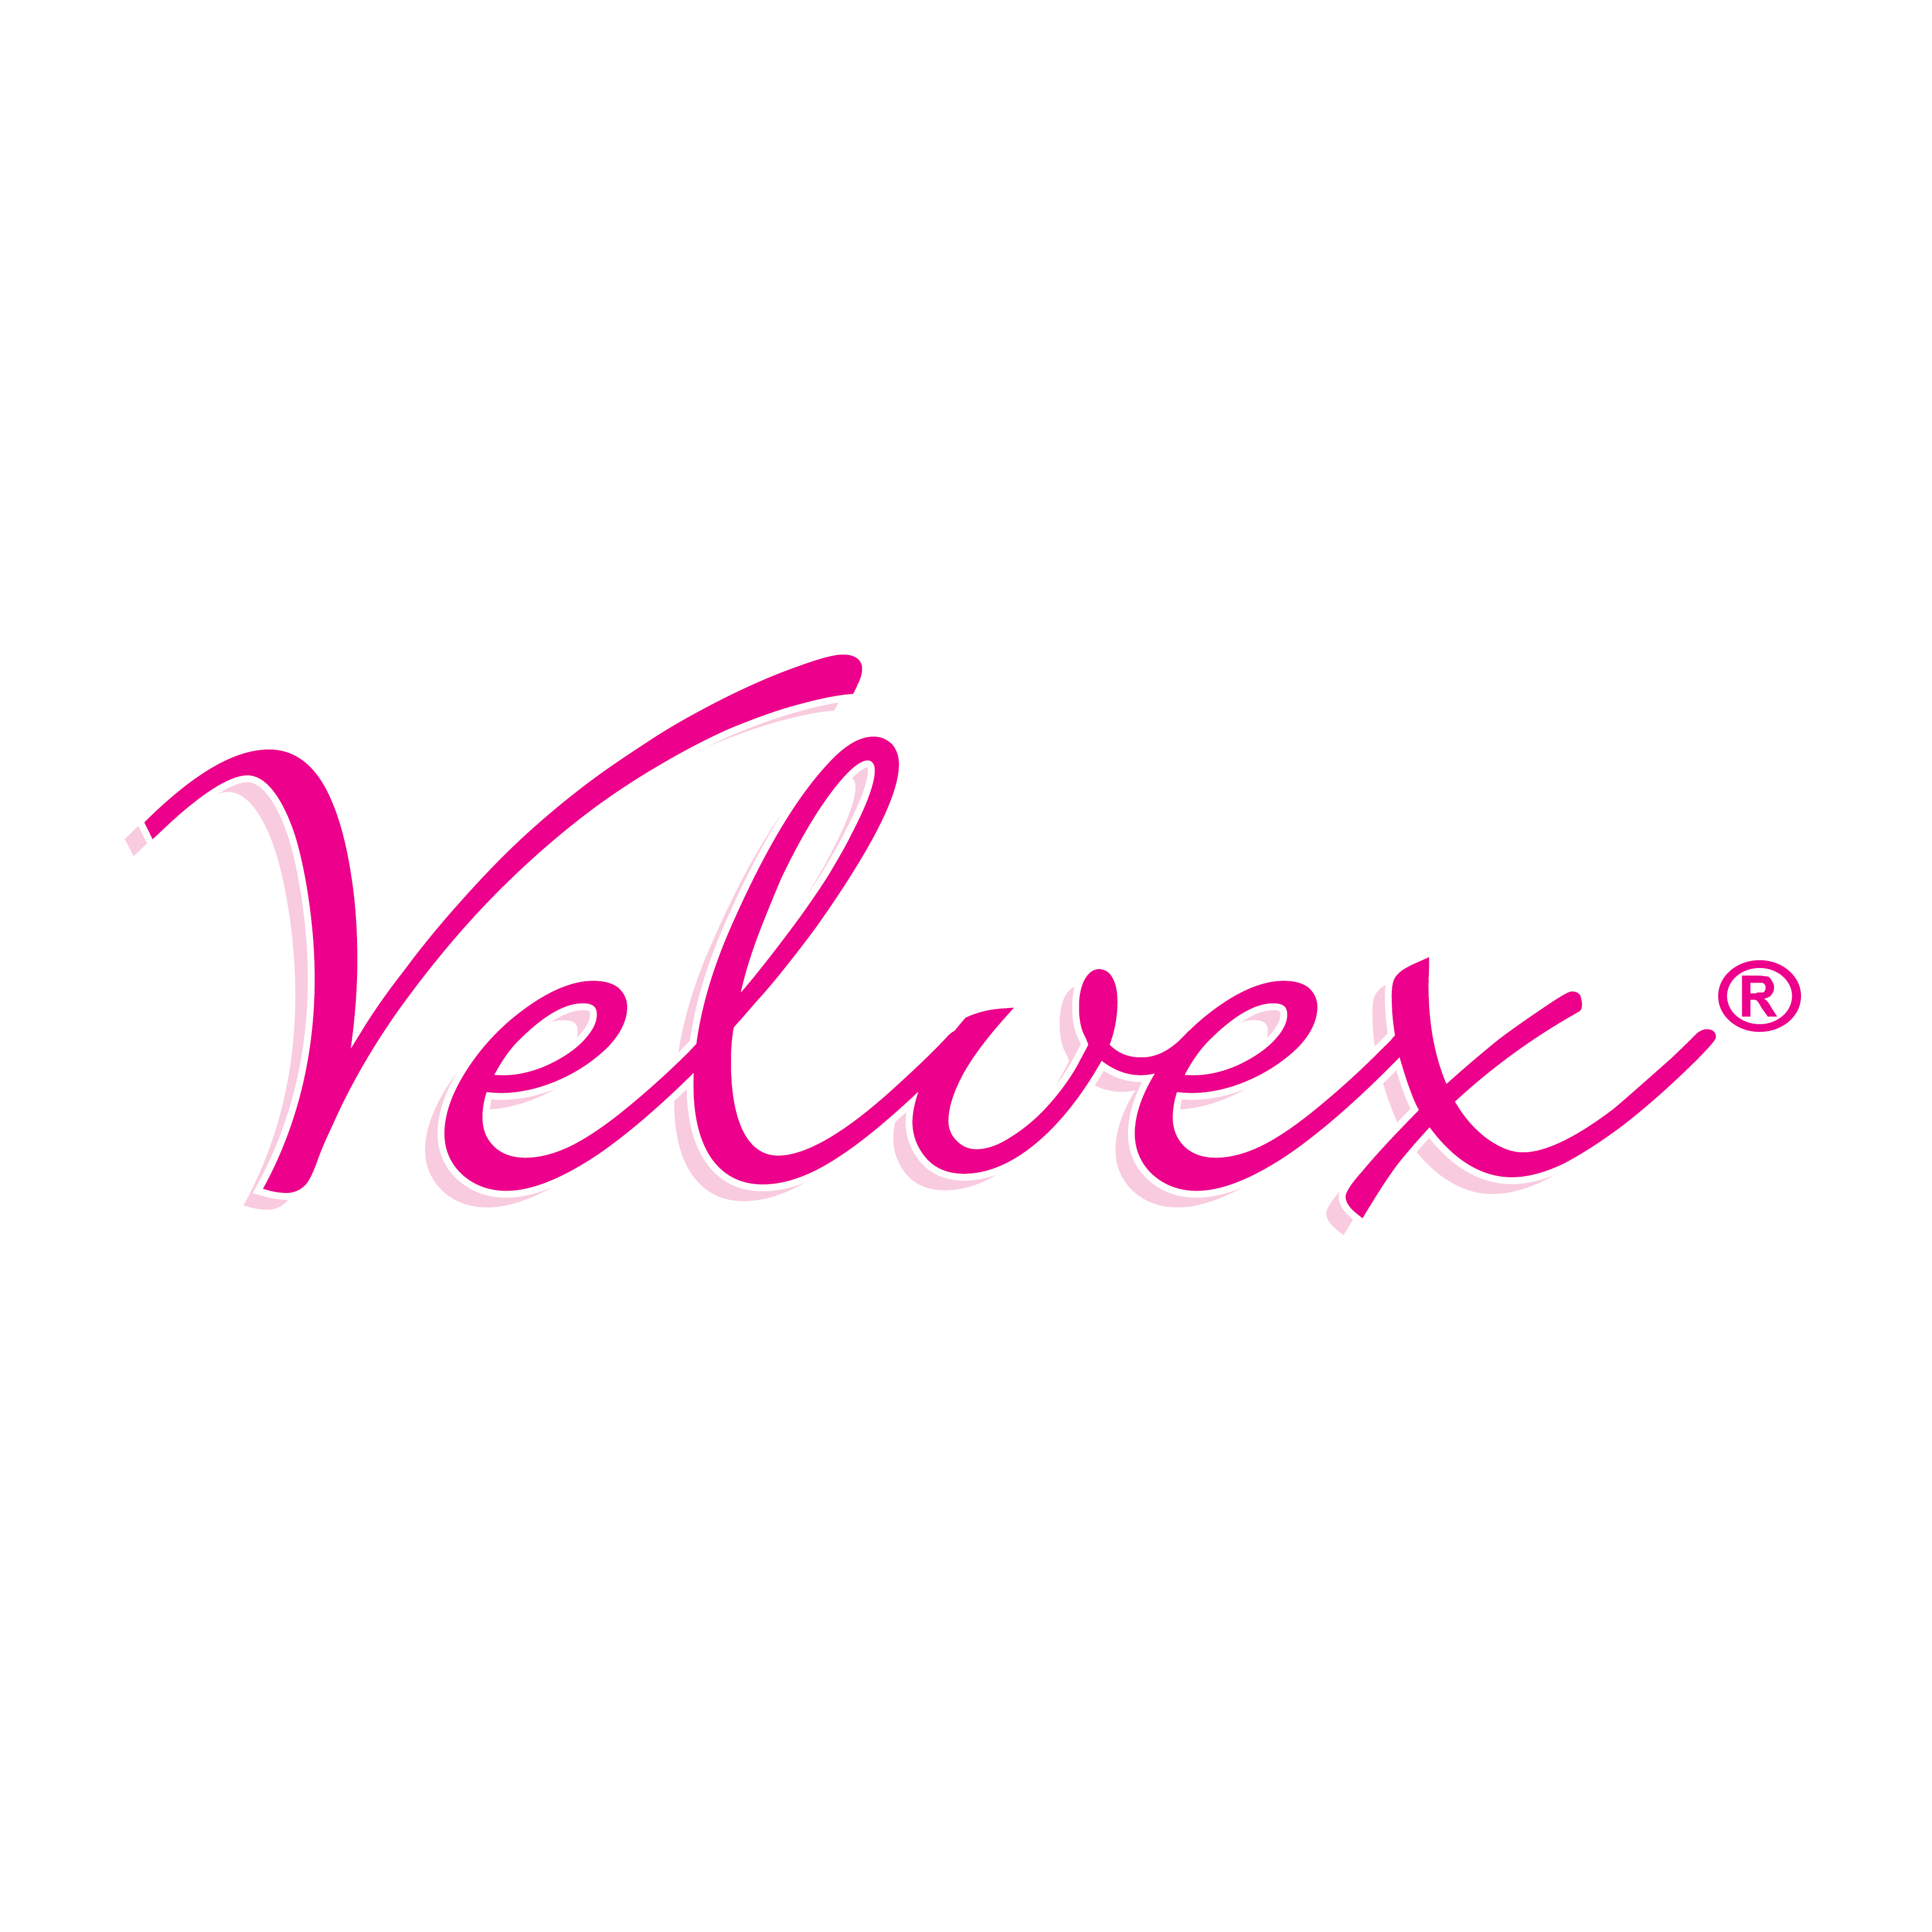 Velvex Sanitary